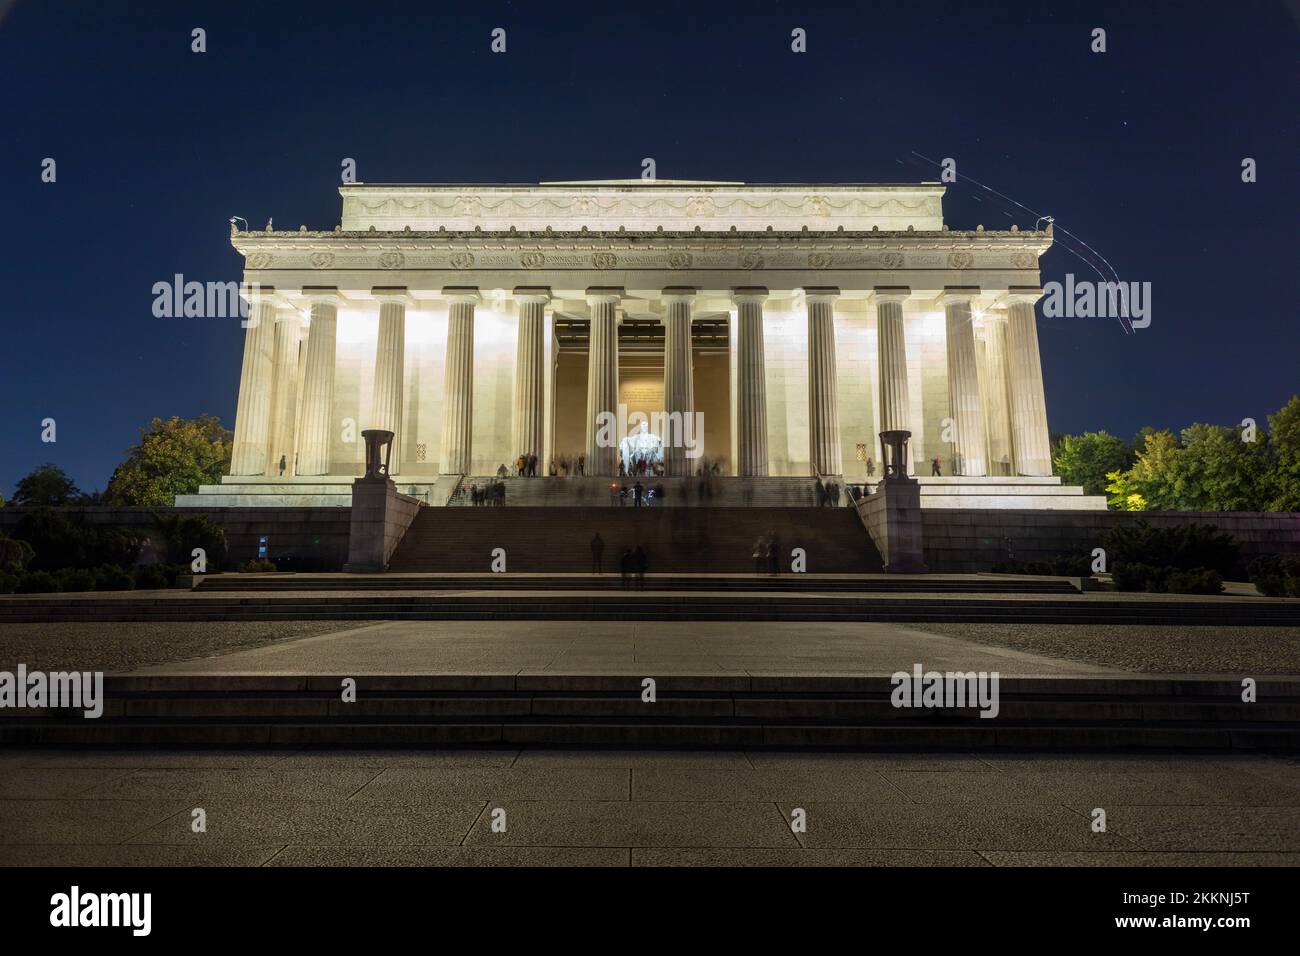 Los turistas visitan el Lincoln Memorial en Washington, D.C. en una noche de otoño. Exposición larga Amplio plano desde el lado este del edificio. Foto de stock